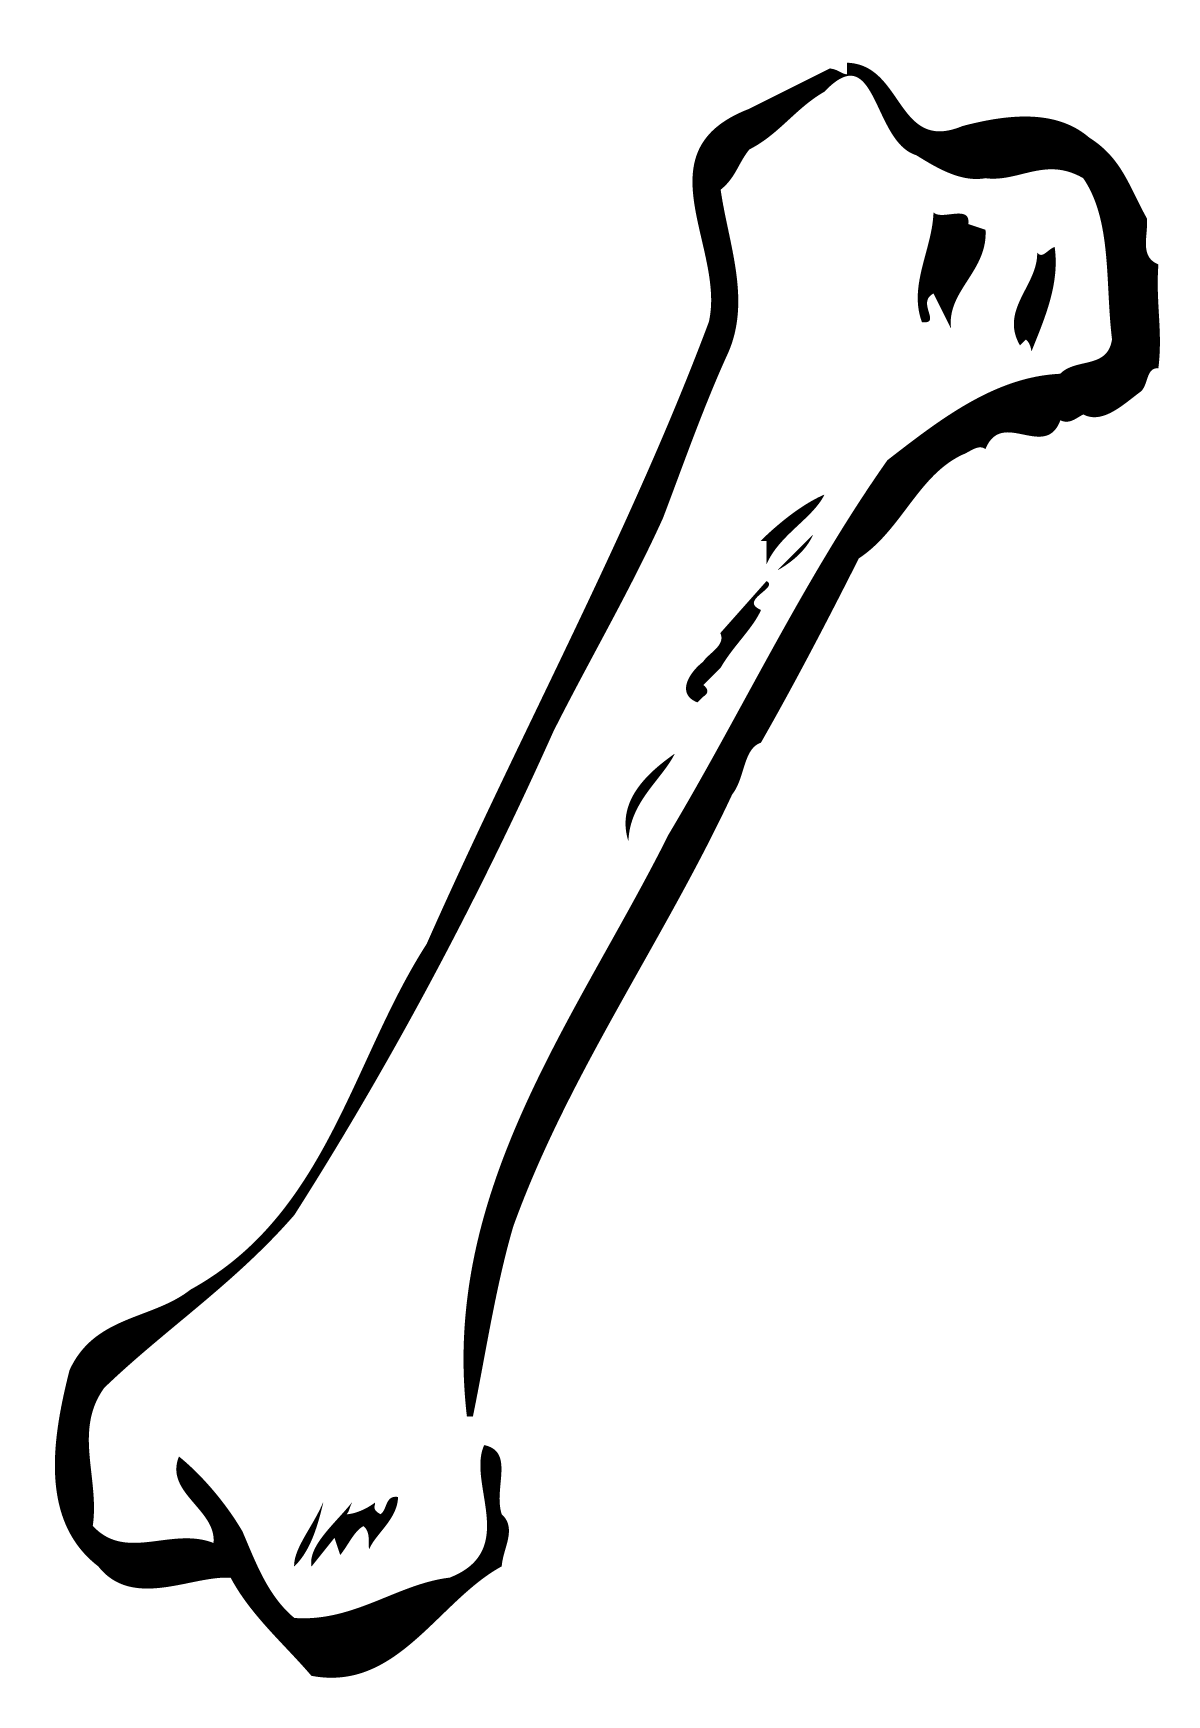 Bones clipart #15, Download drawings